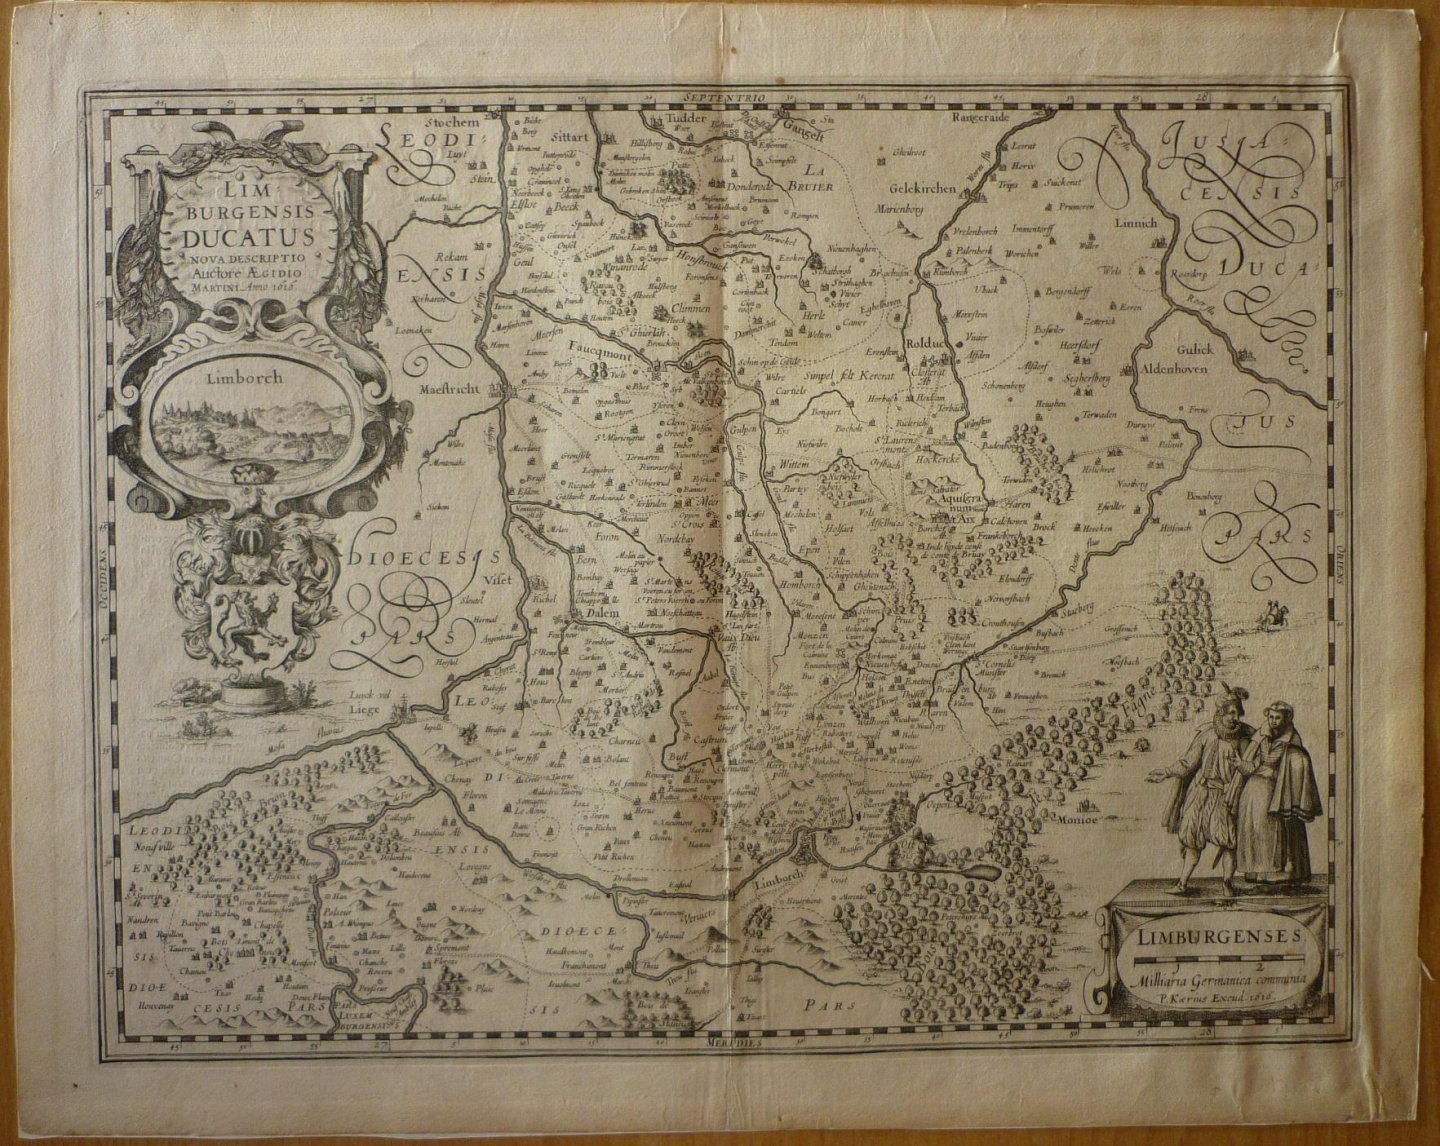 Kaerius, Petrus [Pieter van der Keere] - Limburgensis Ducatus nova descriptio Auctore Aegidio Martini Anno 1616 Originele kopergravure